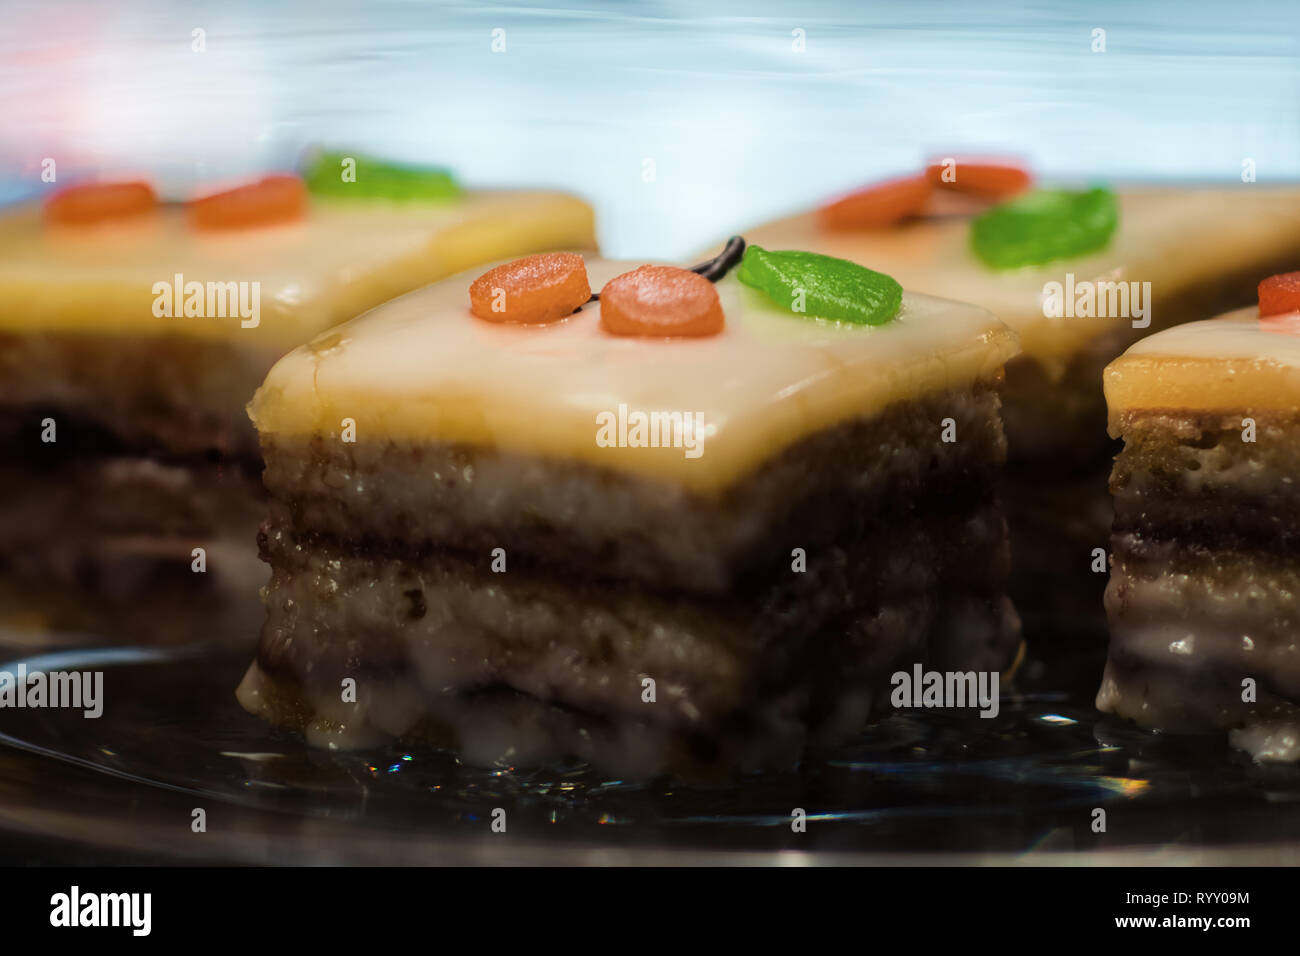 Süße Nachspeise mit Kirschen Dekoration - Kuchen, Kuchenstücke als Dessert Stock Photo